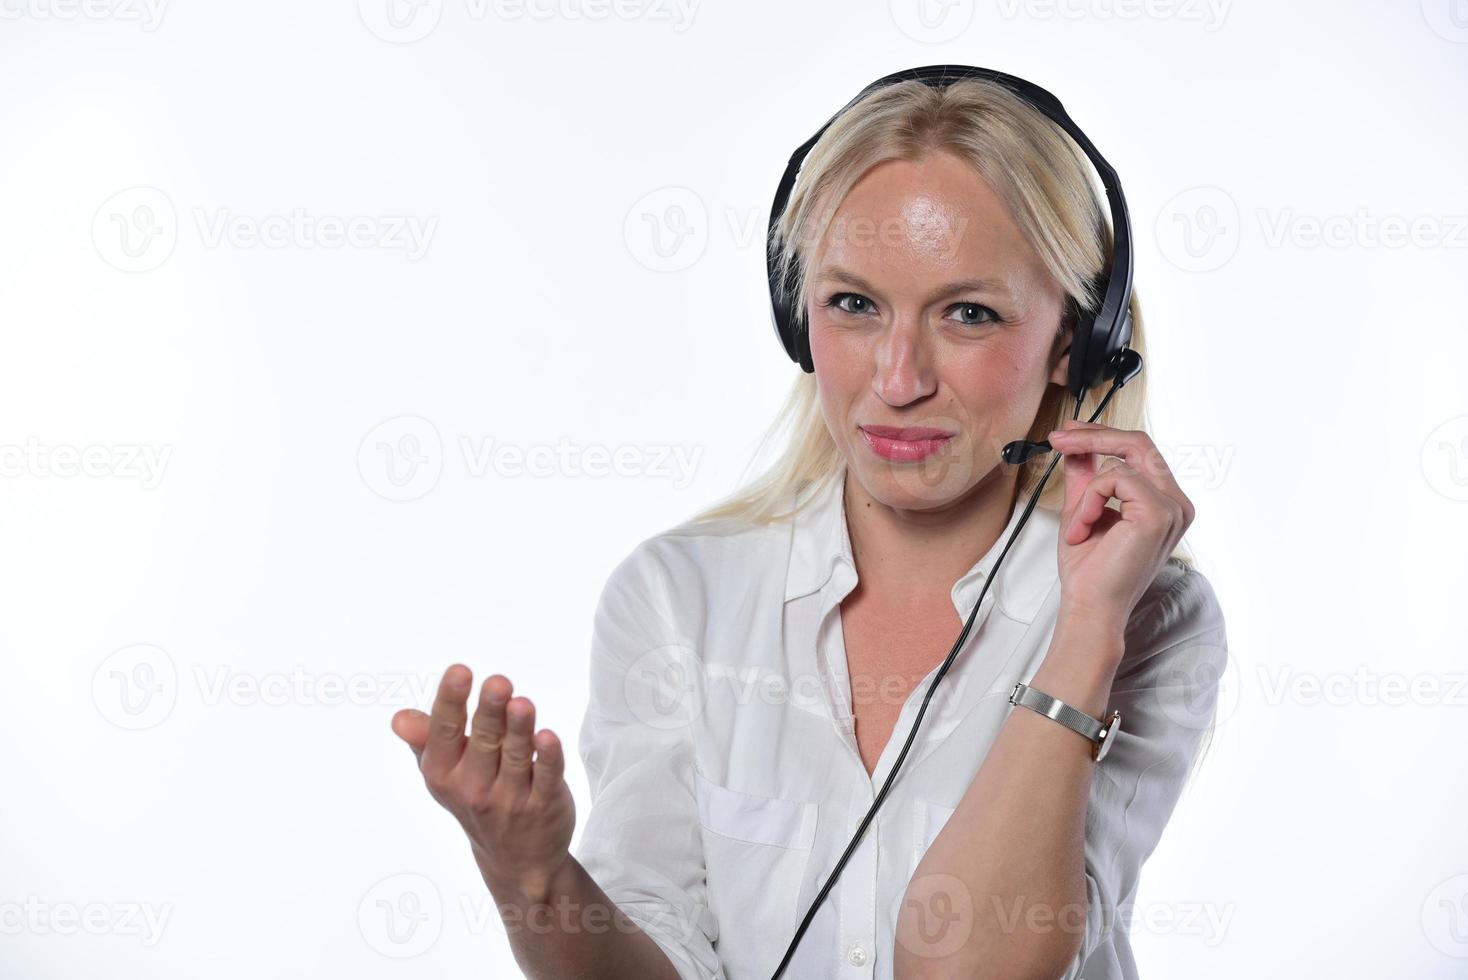 consultor remoto. una asistente de atención al cliente milenaria segura de sí misma se sienta en el lugar de trabajo con una computadora portátil usando auriculares consultando a la persona que llama. foto